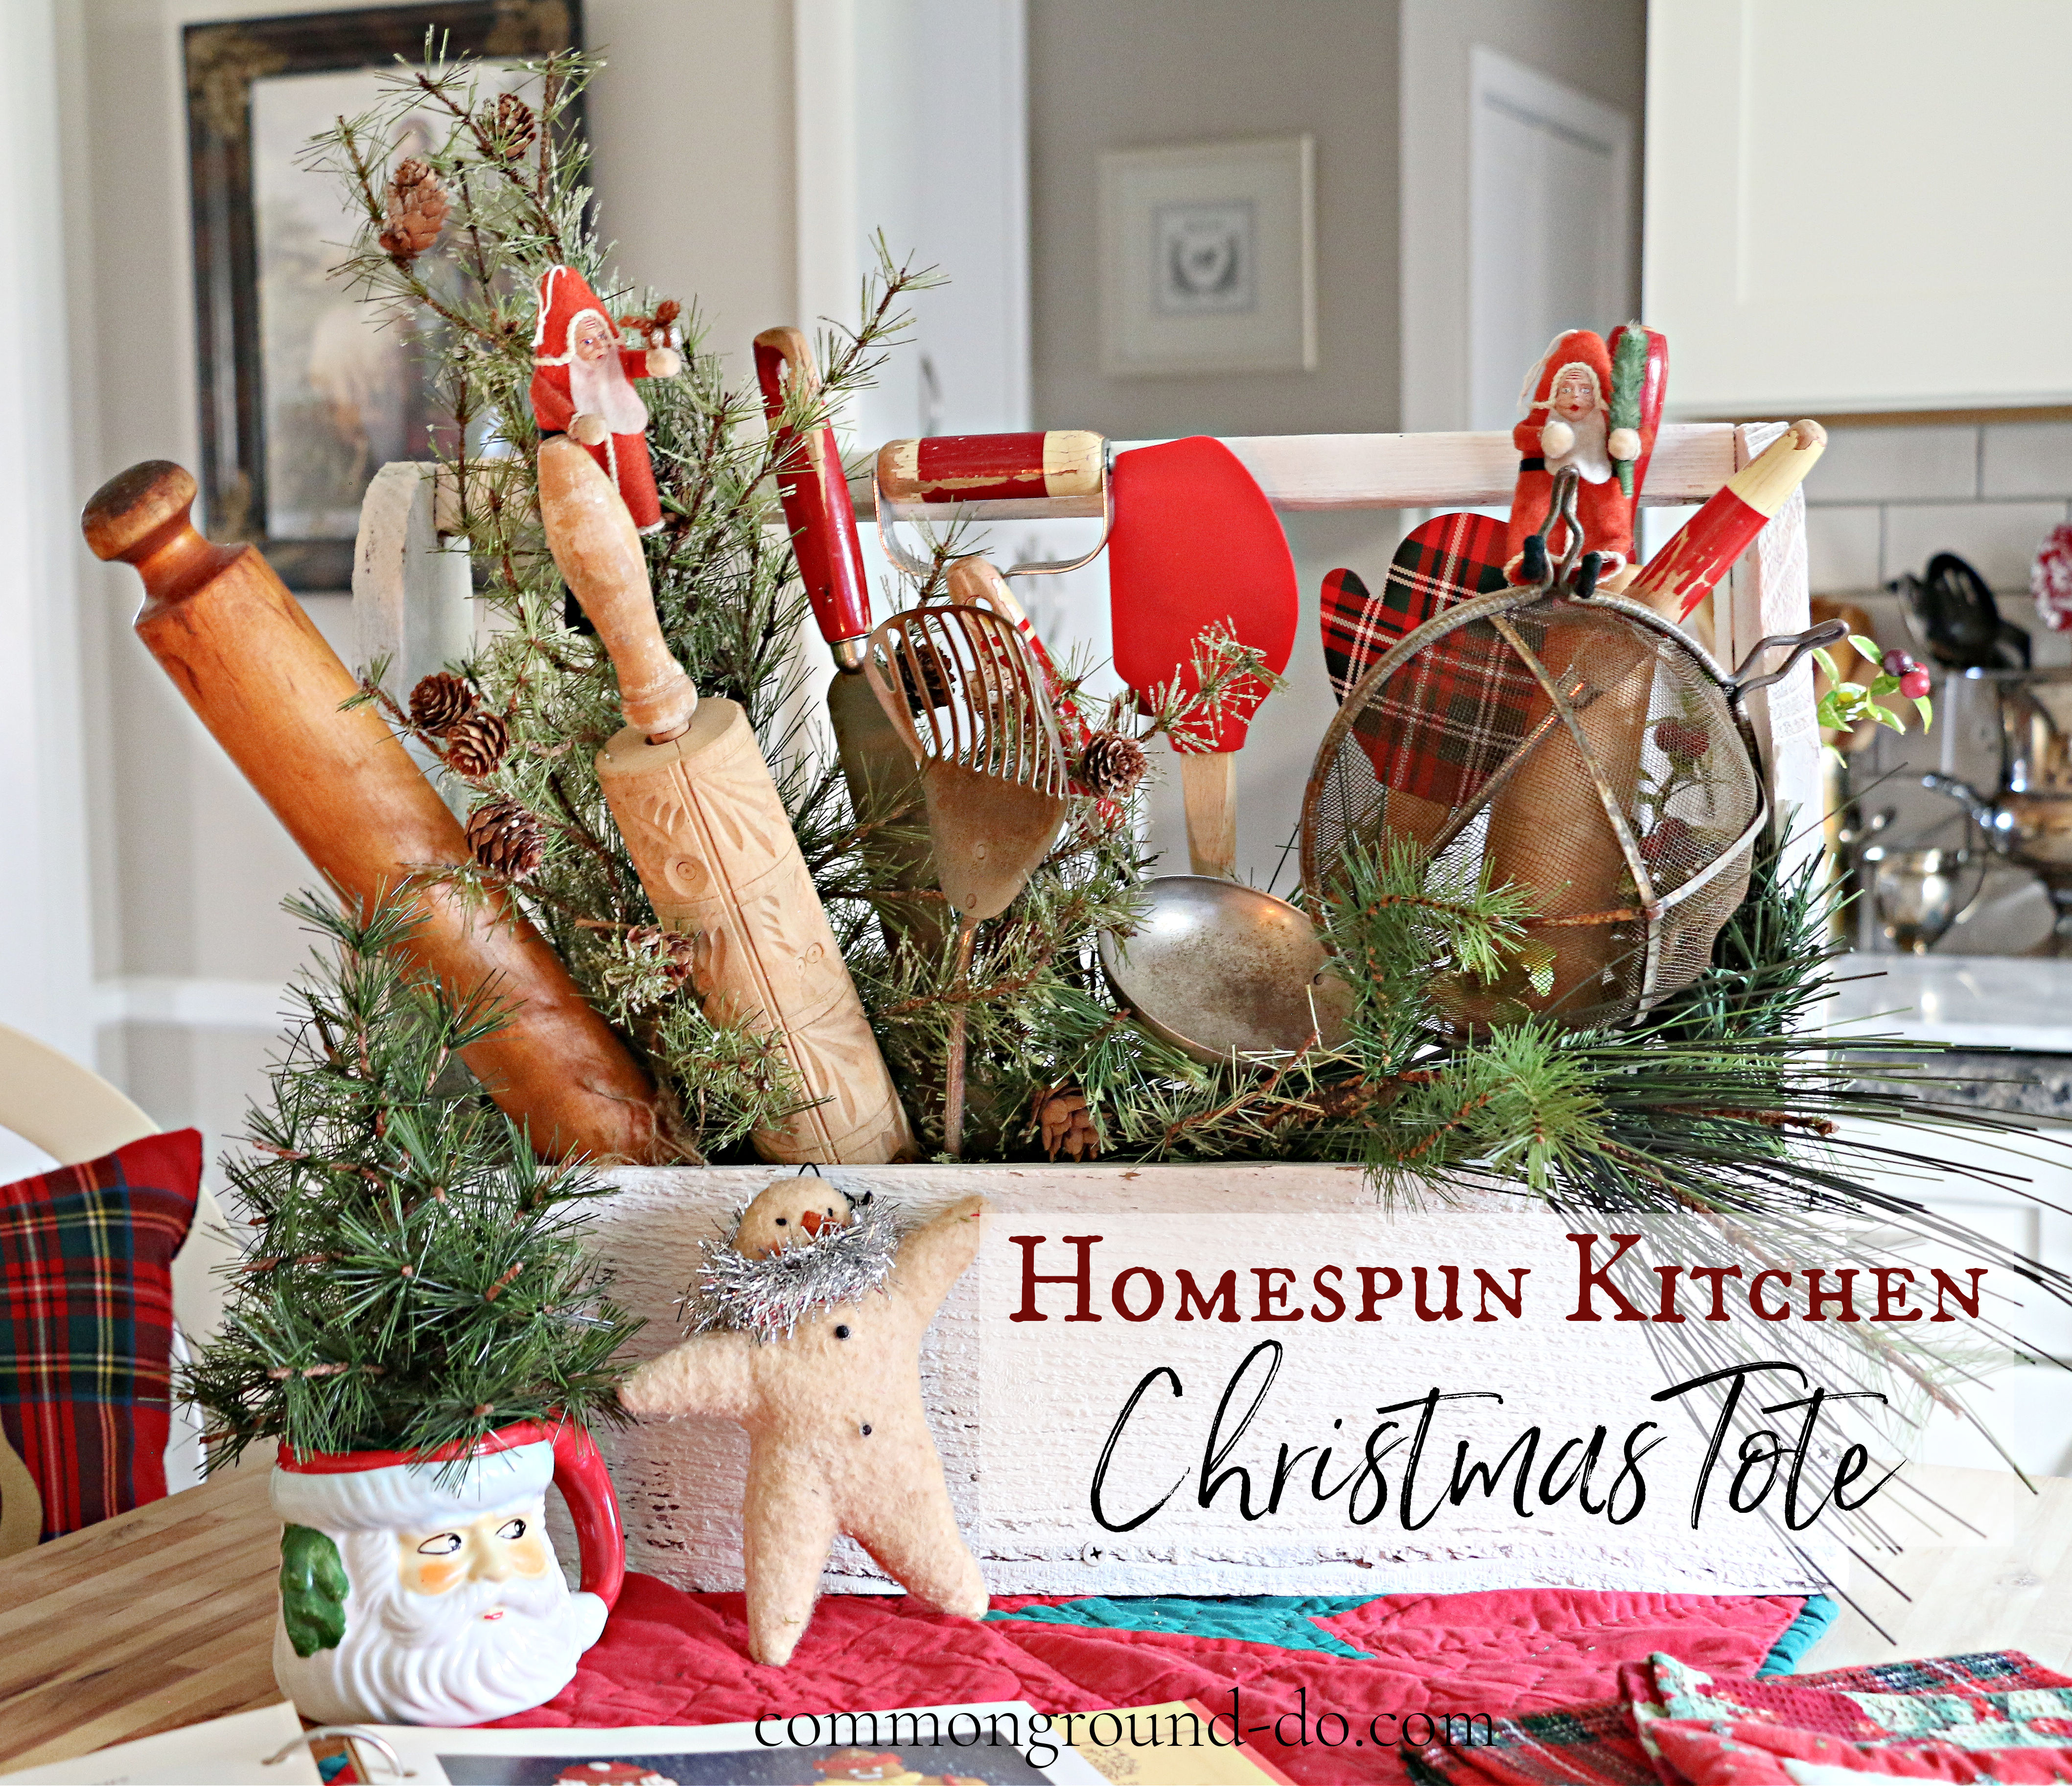 12 Kitchen Christmas Decor Ideas to Try This Season